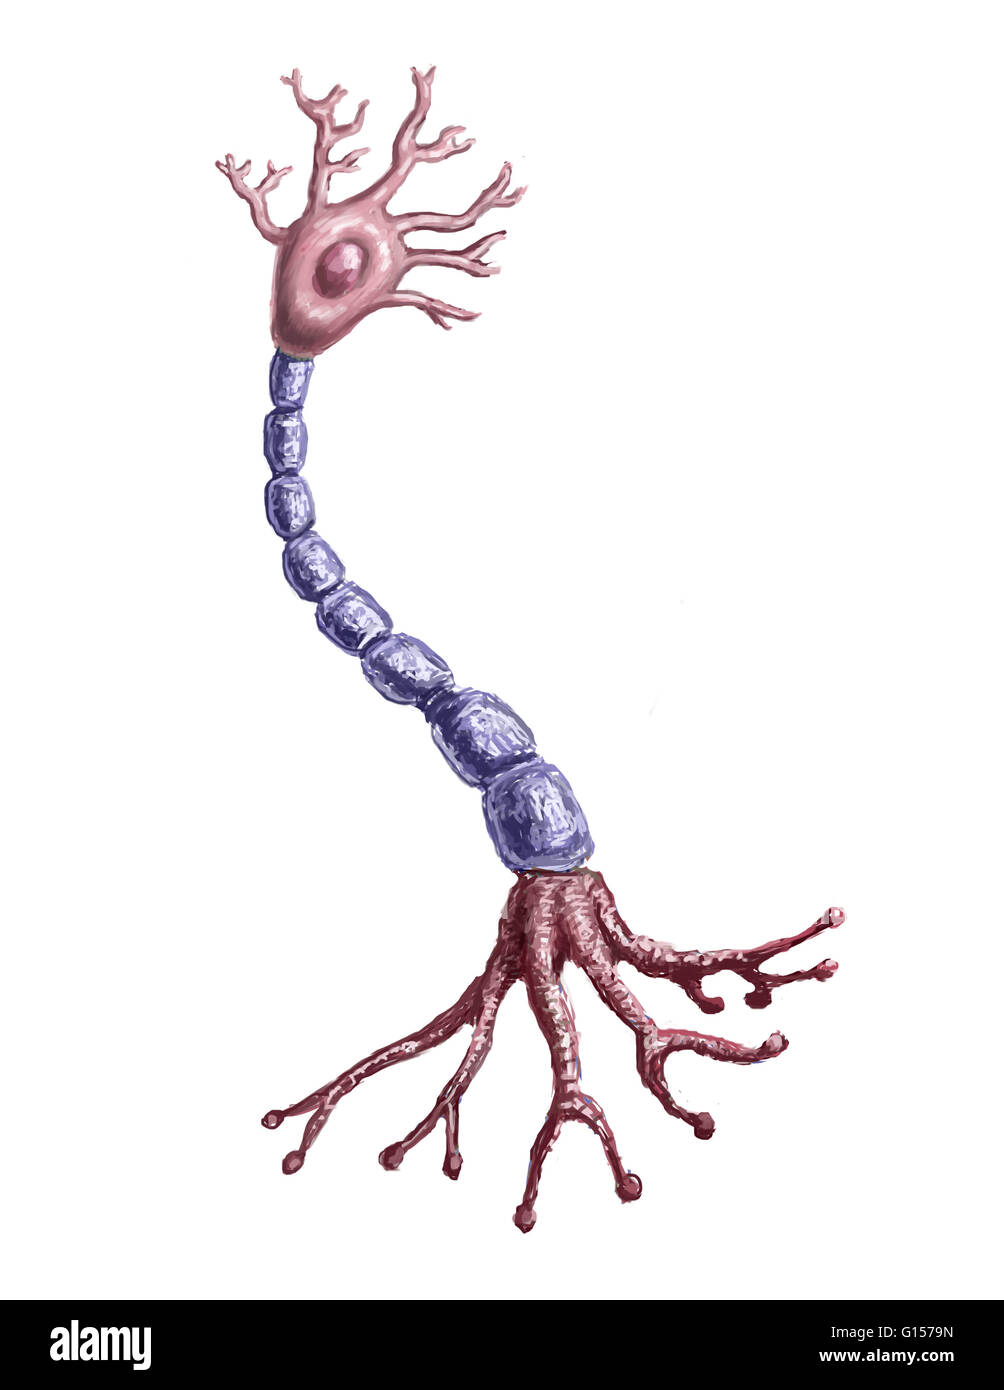 Illustrazione di un neurone o cellula nervosa che fa parte del sistema nervoso che di processo e trasmette informazioni da elettriche e chimiche per la segnalazione. Foto Stock